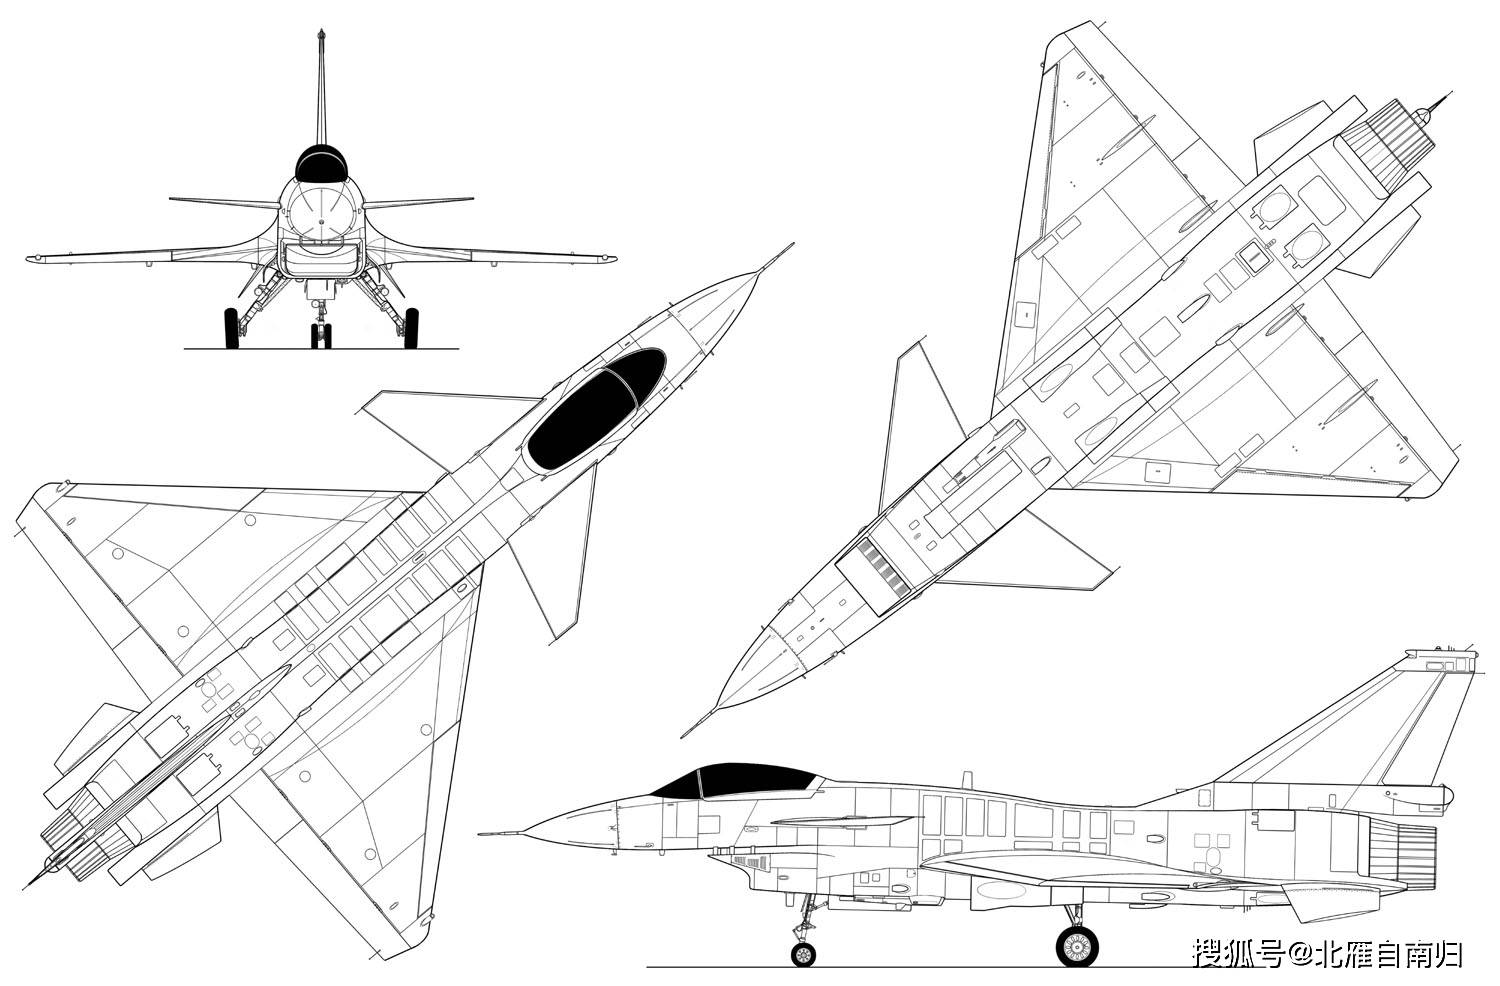 原创梦想无处不在60年代航空业罕见机型可变后掠翼重型歼10